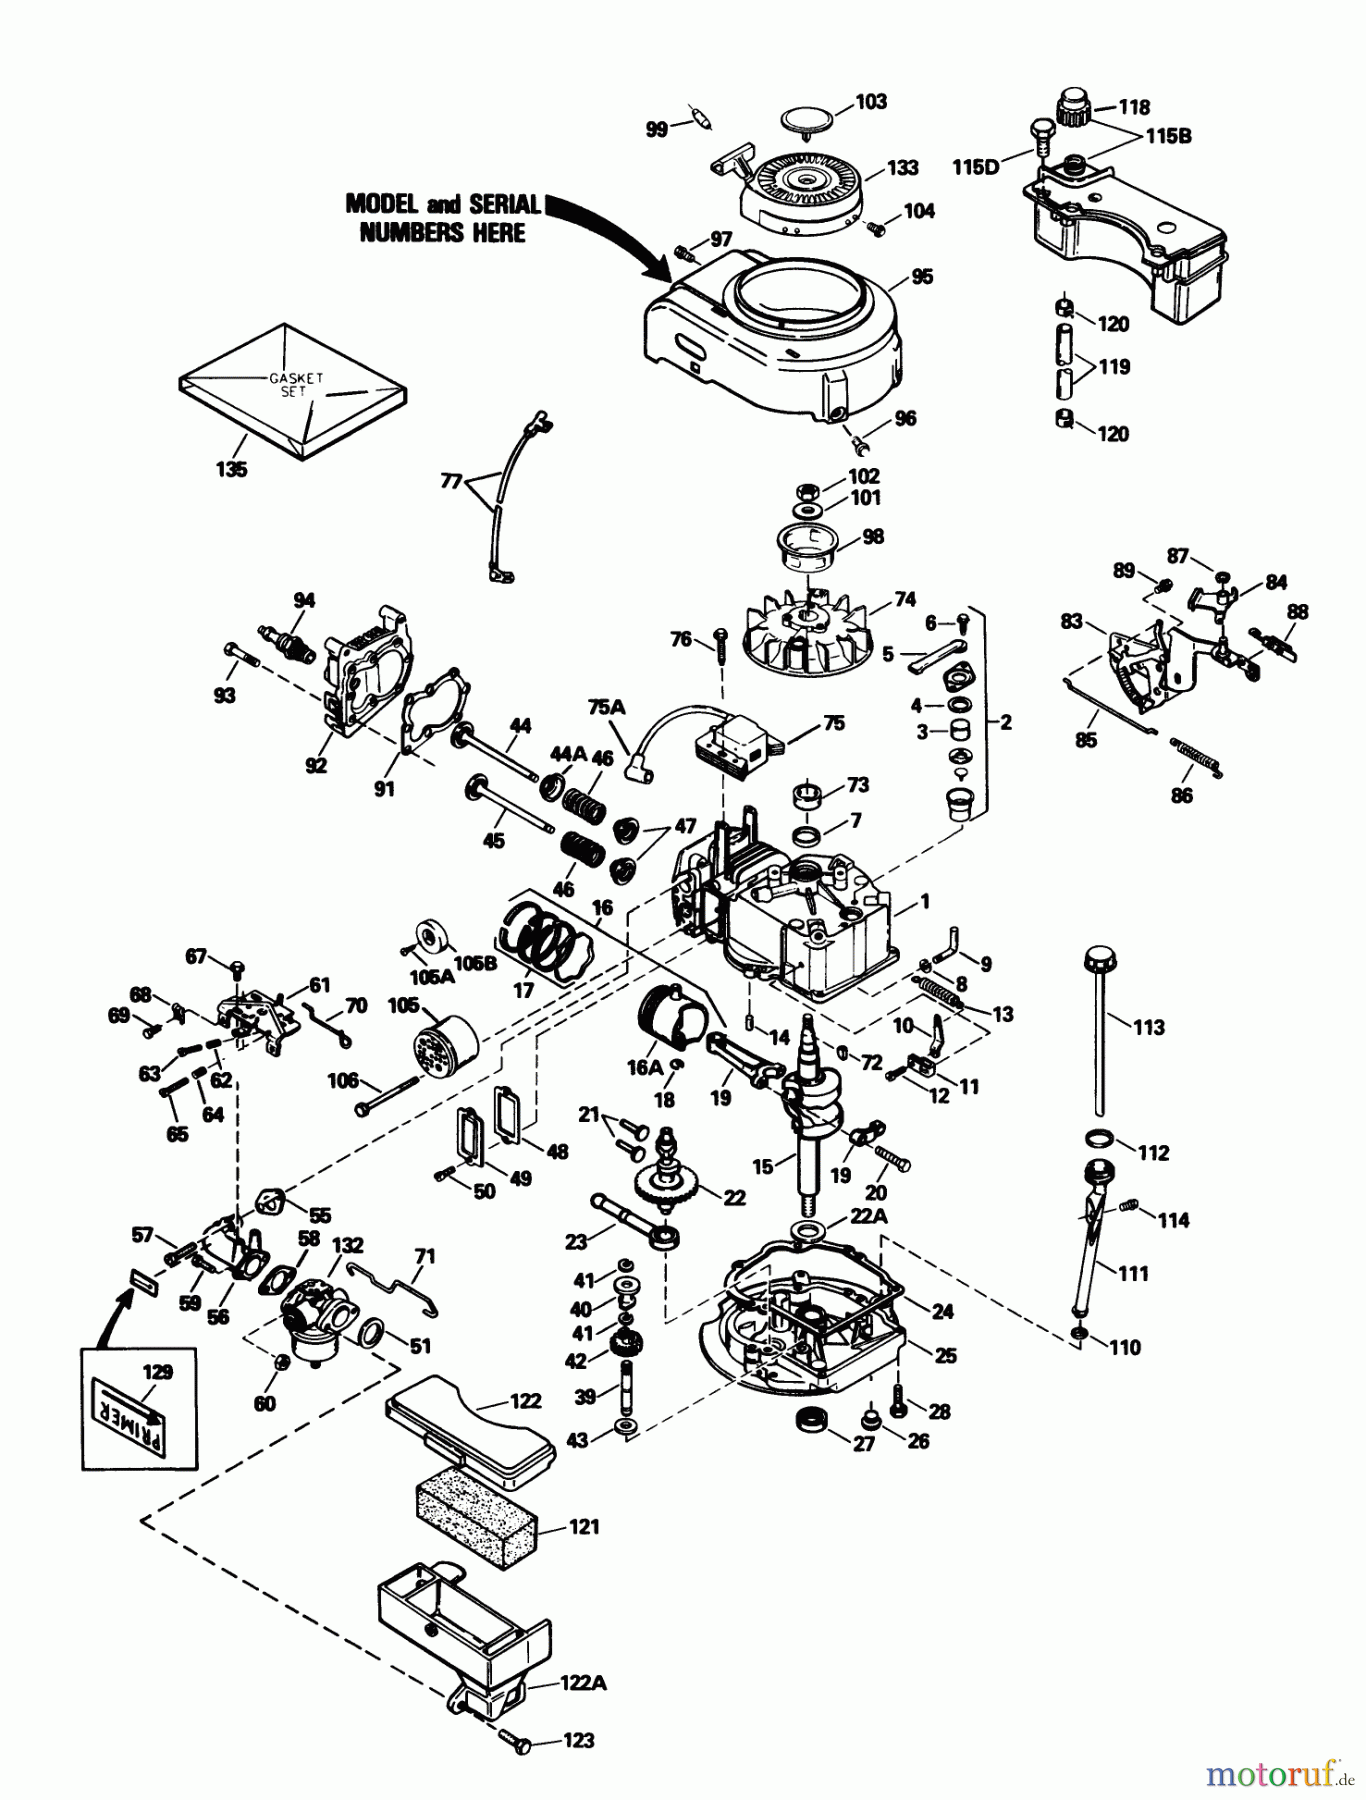  Toro Neu Mowers, Walk-Behind Seite 1 20586C - Toro Lawnmower, 1989 (9000001-9999999) ENGINE TECUMSEH MODEL TVS100-44021B